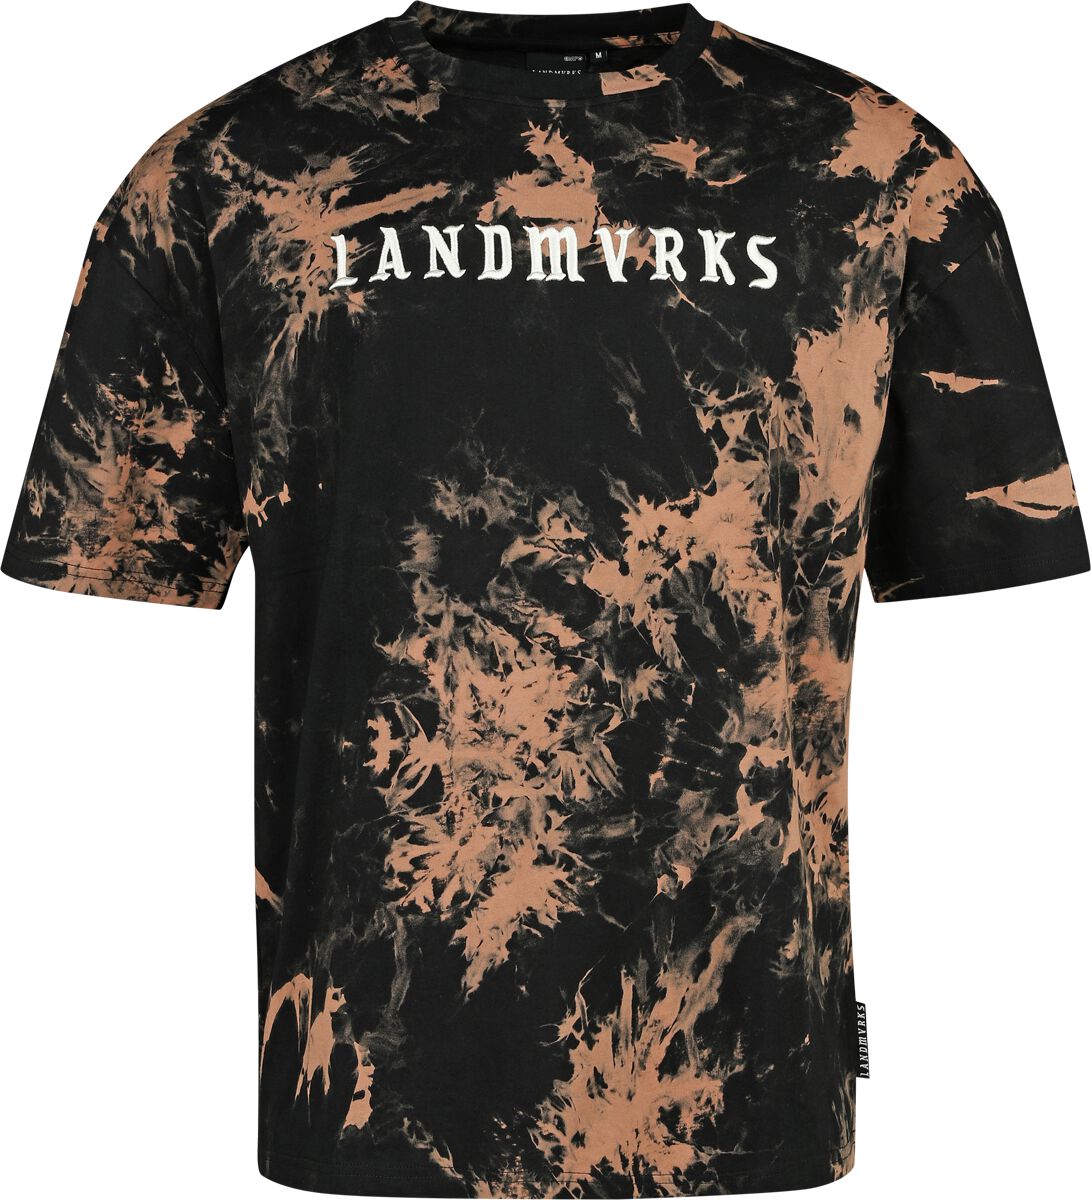 Landmvrks EMP Signature Collection T-Shirt schwarz braun in S